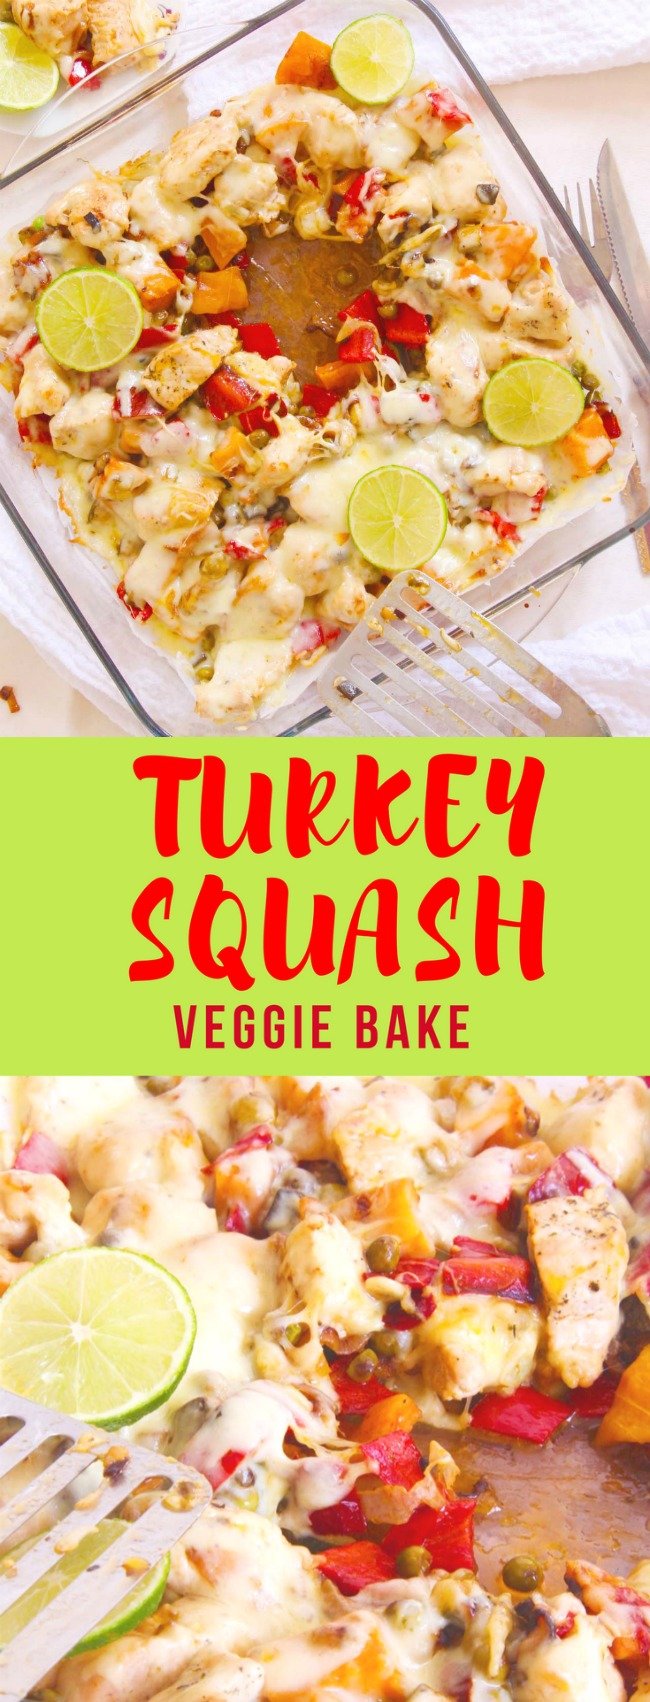 Squash turkey bake